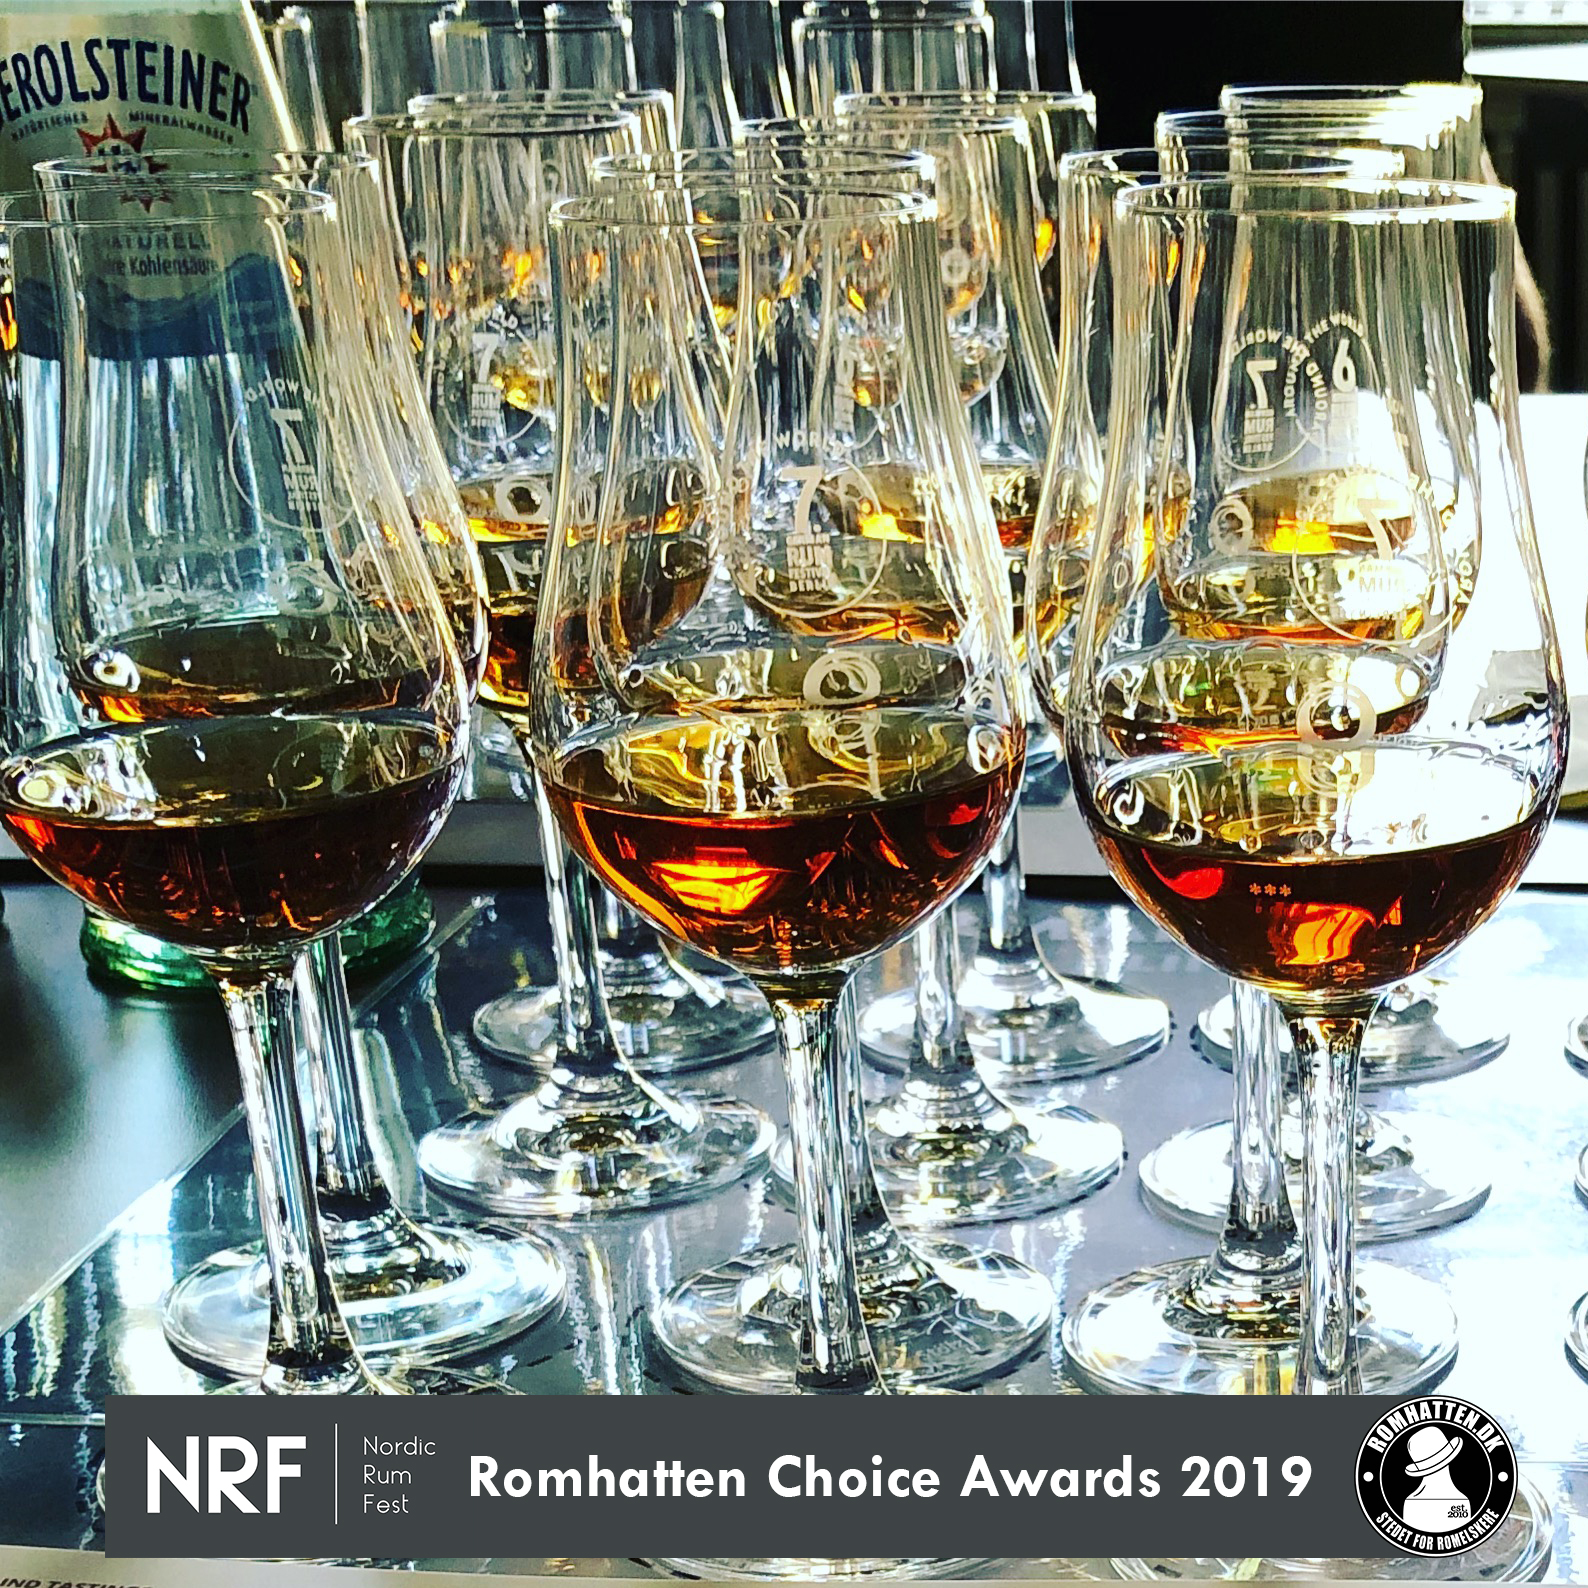 Romhatten Choice Awards 2019 – Nordic Rum Fest - Rom artikler nyheder - Romhatten.dk